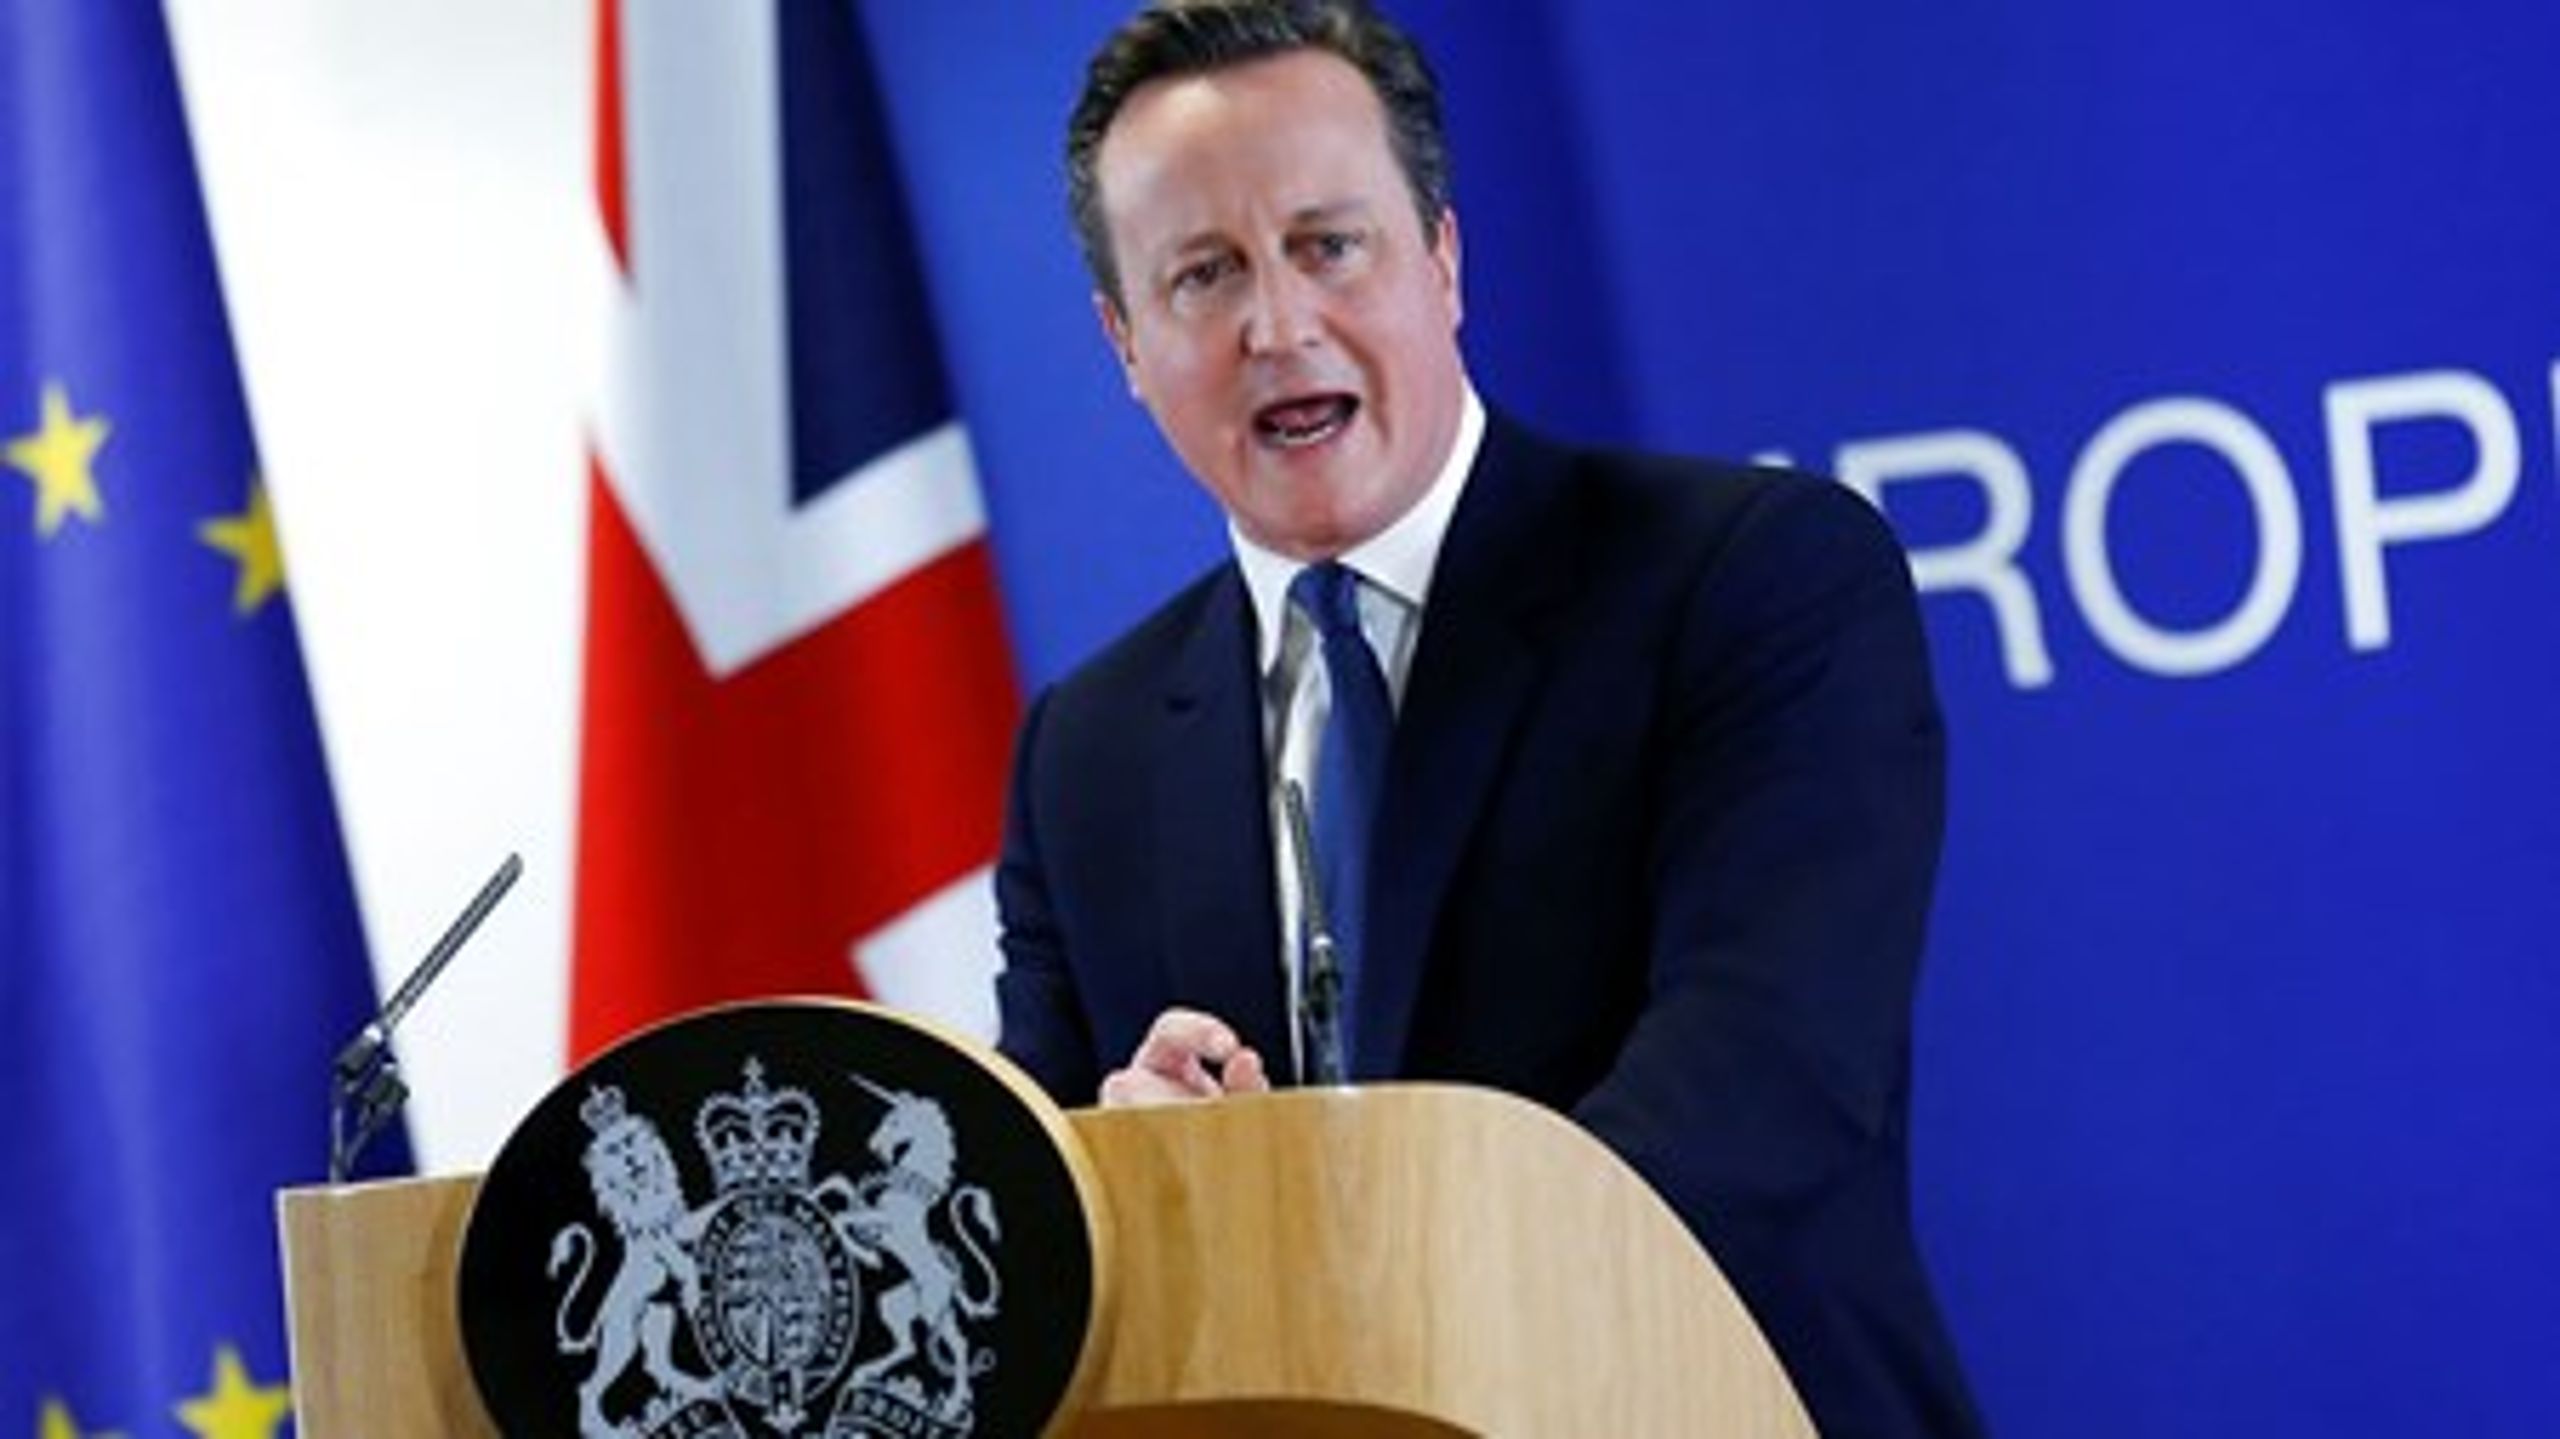 Den britiske premierminister, David Cameron, skal nu hjem og vinde en folkeafstemning om Storbritanniens fremtidige medlemskab af EU.